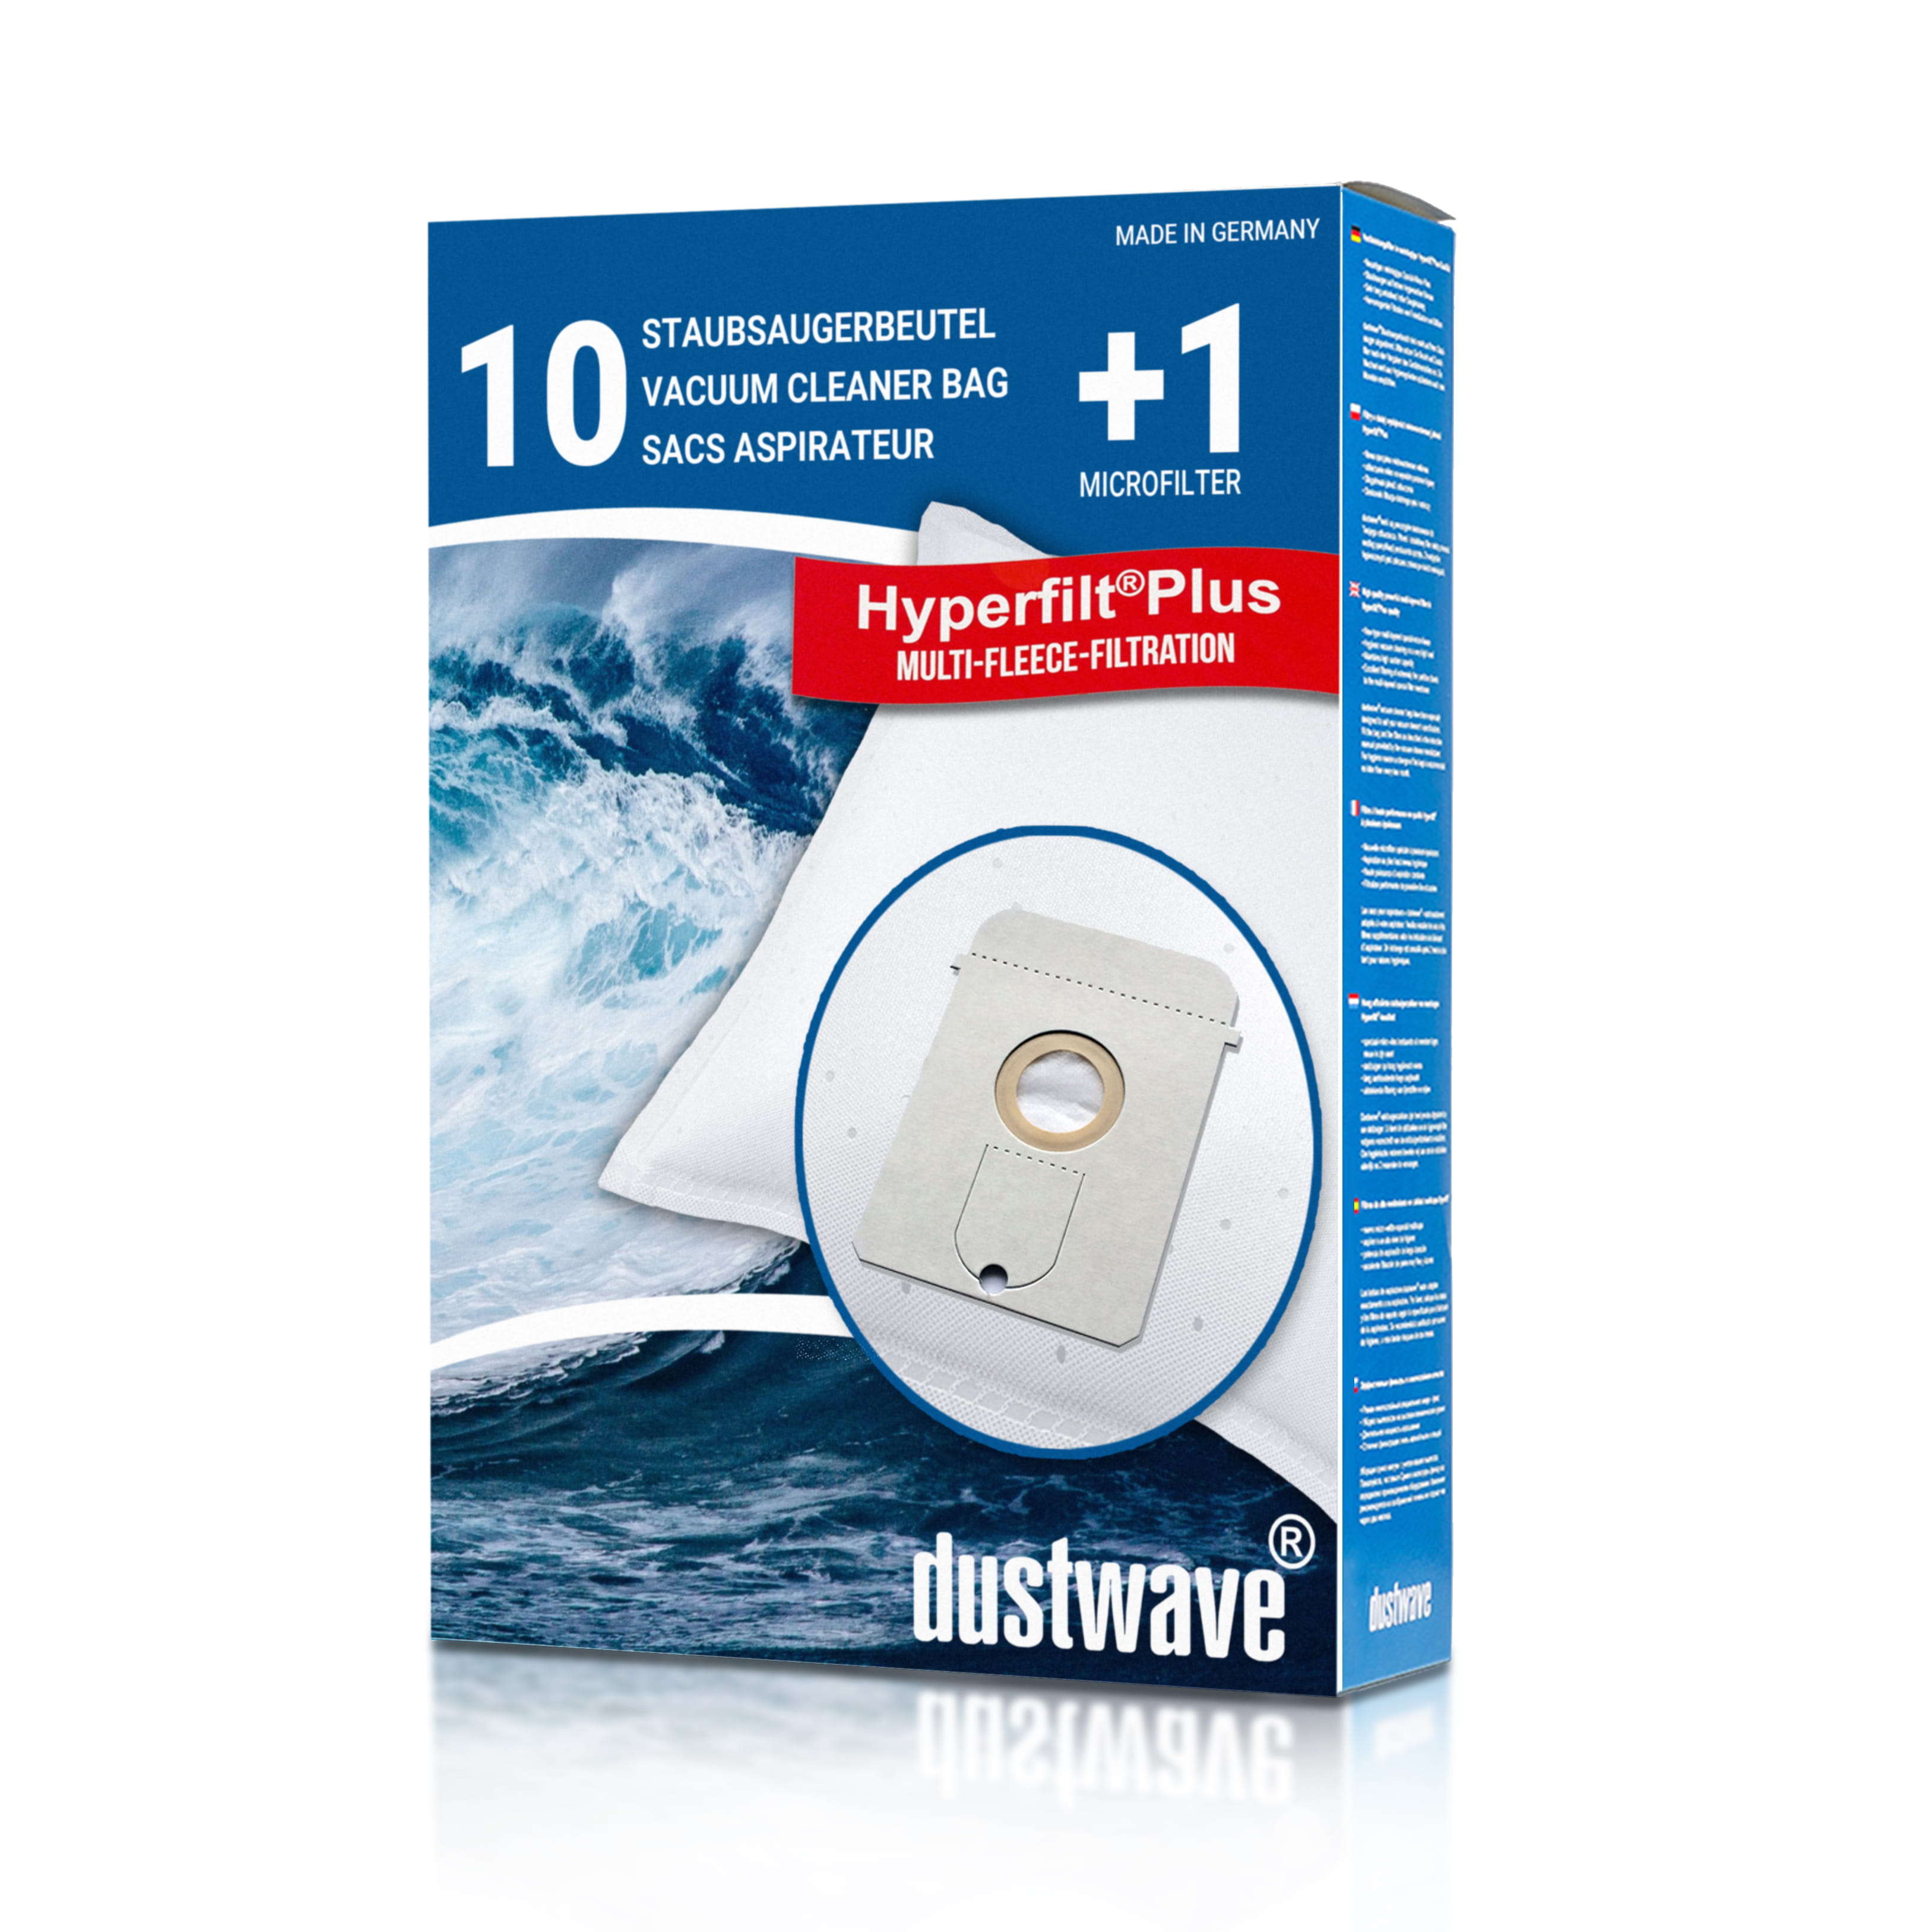 Dustwave® 10 Staubsaugerbeutel für Base BA 1001 - hocheffizient mit Hygieneverschluss - Made in Germany